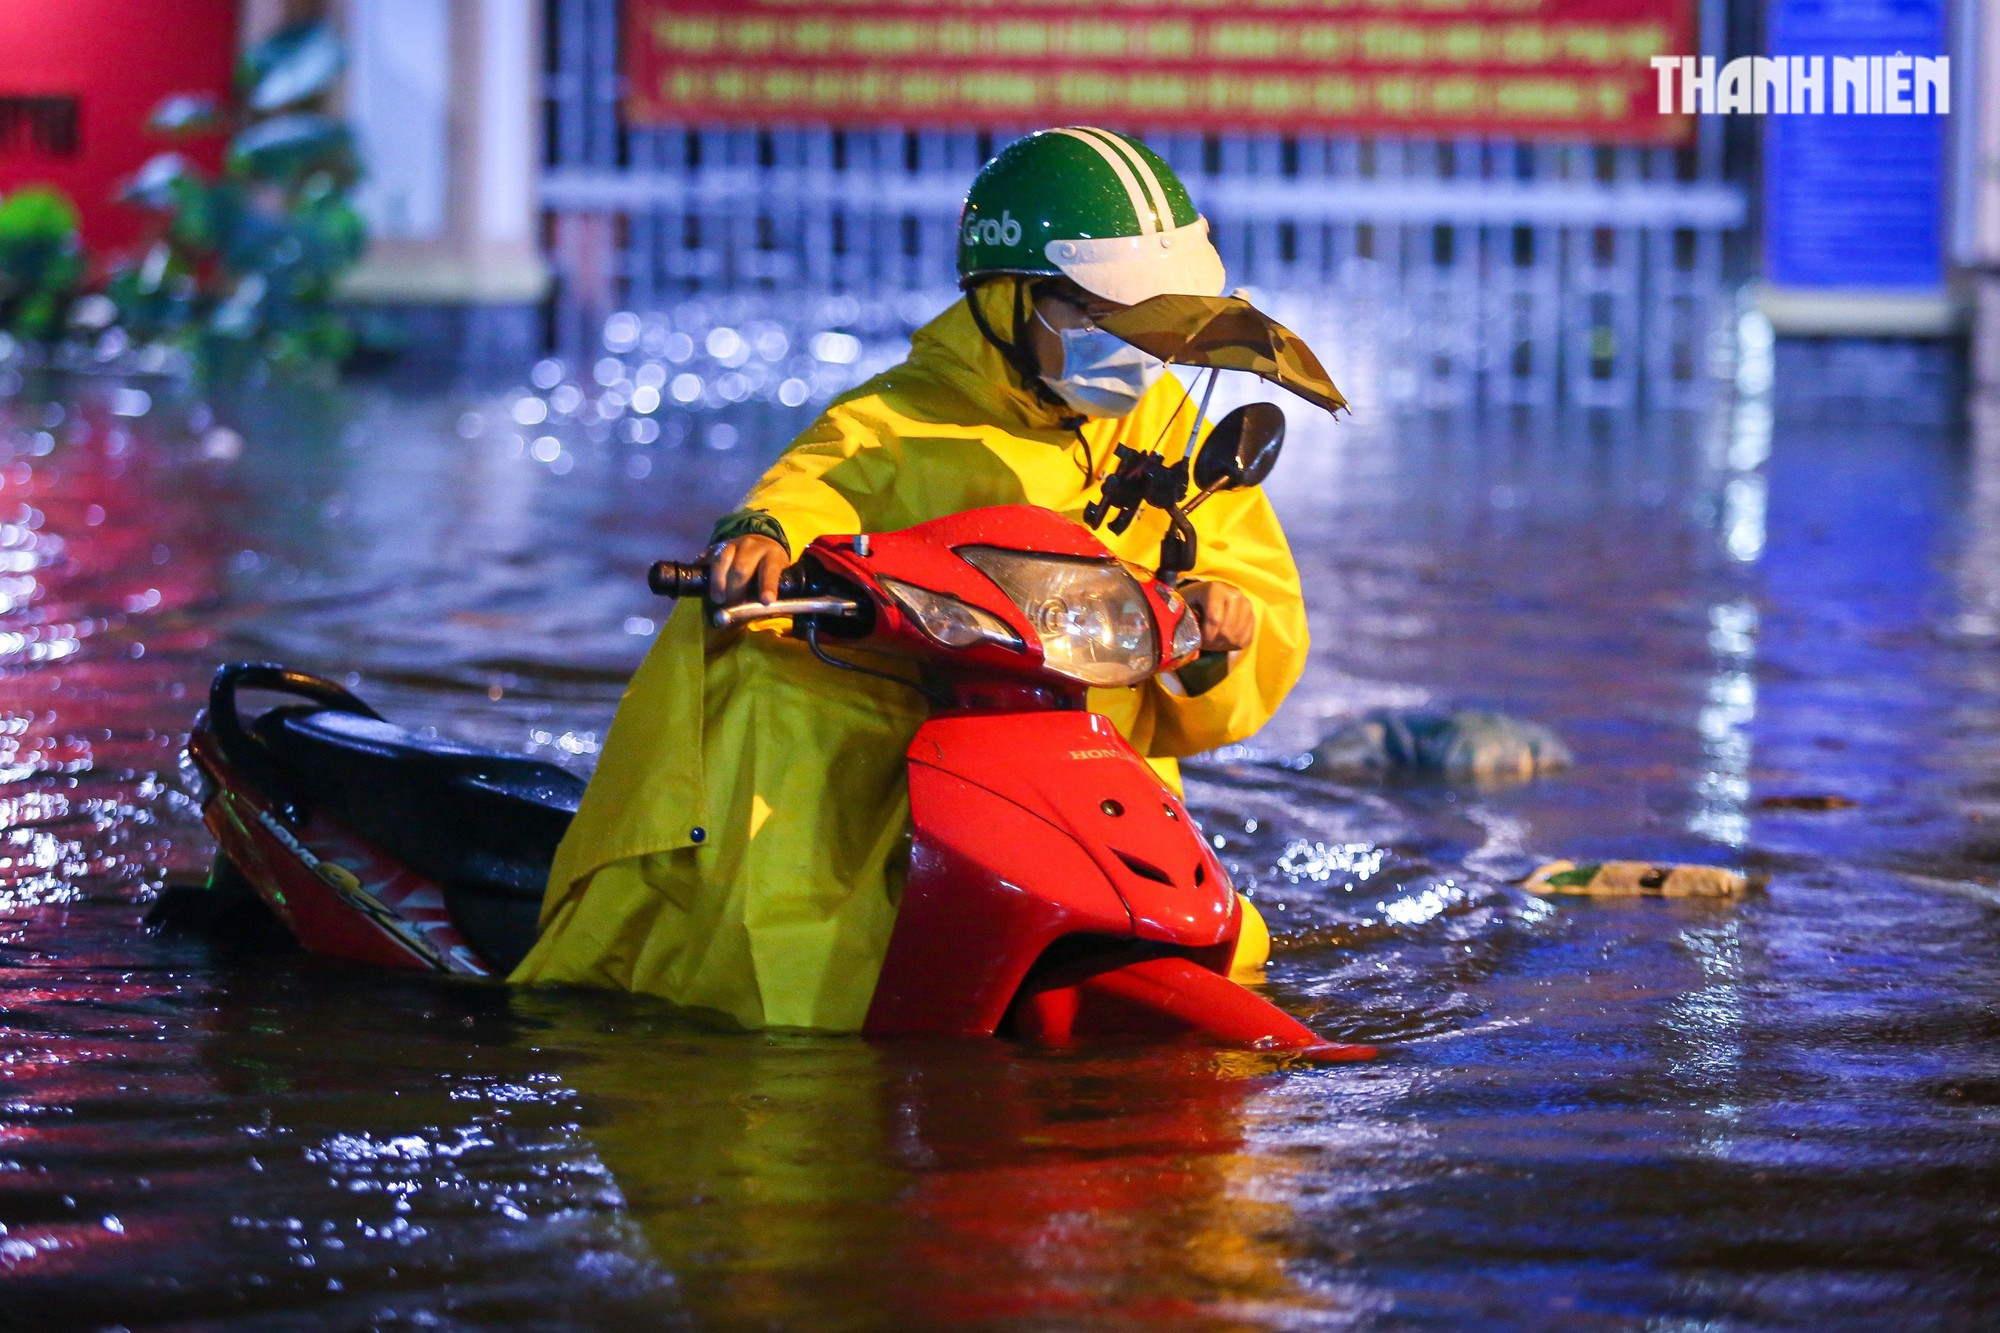 TP.HCM mưa lớn tối nay: Nước dâng tới yên, có người 'cõng xe' qua đoạn ngập - Ảnh 1.